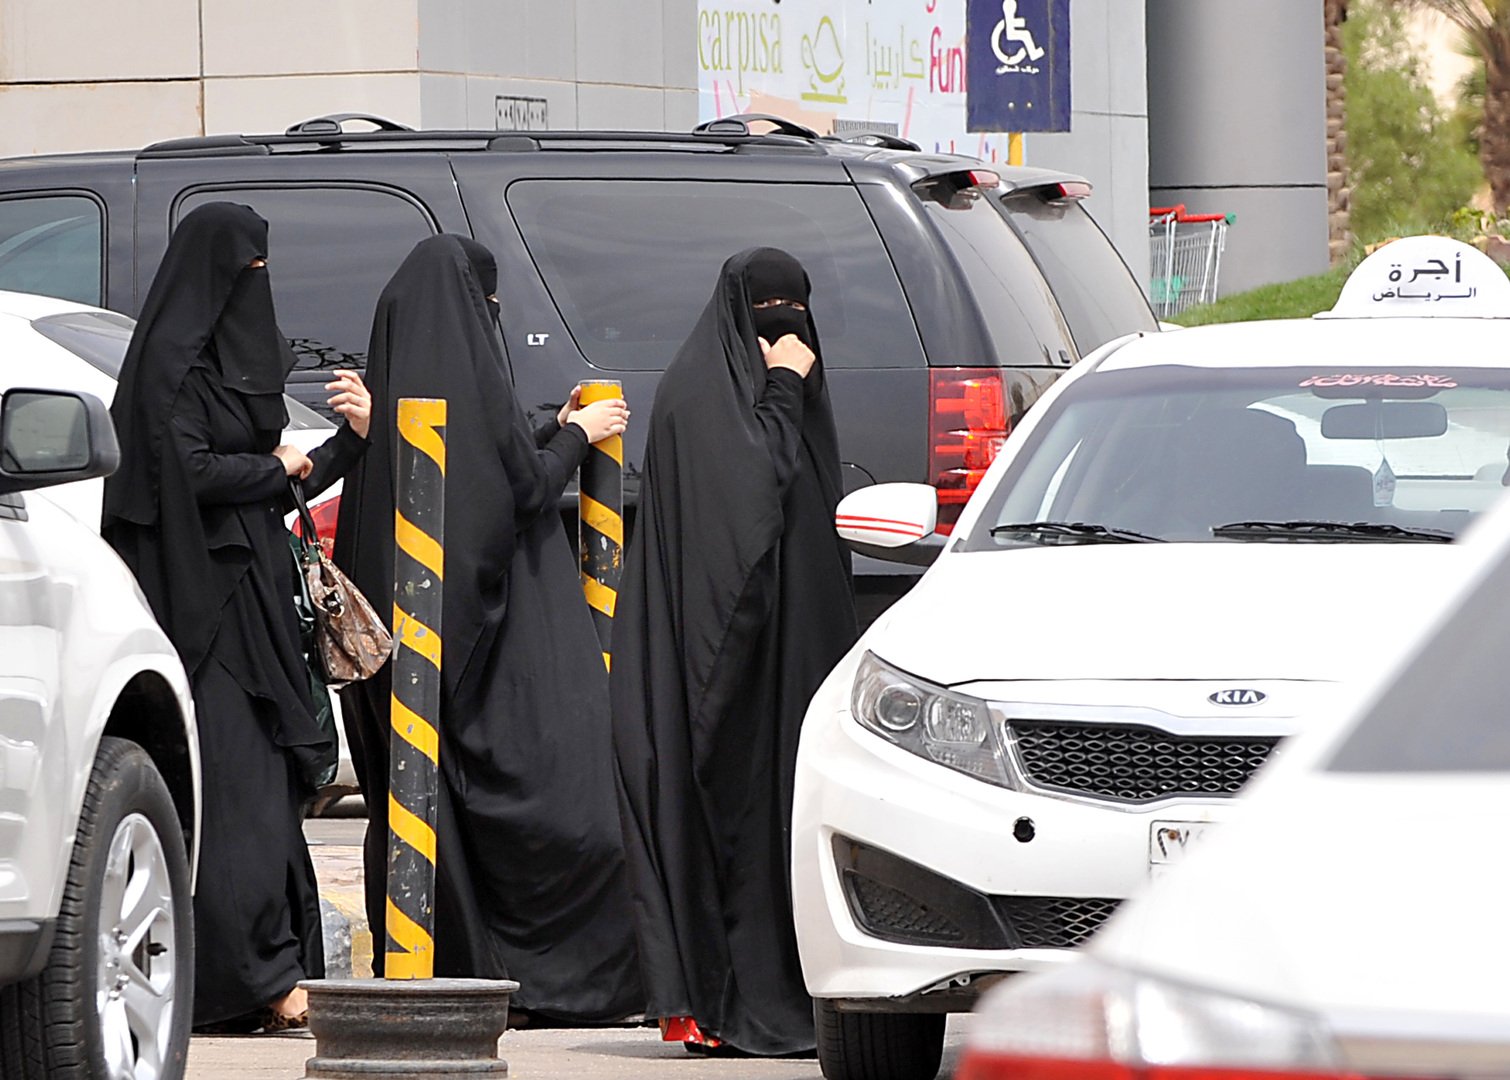 النيابة العامة في السعودية تنتصر لمطلقة ظلمها أهلها!